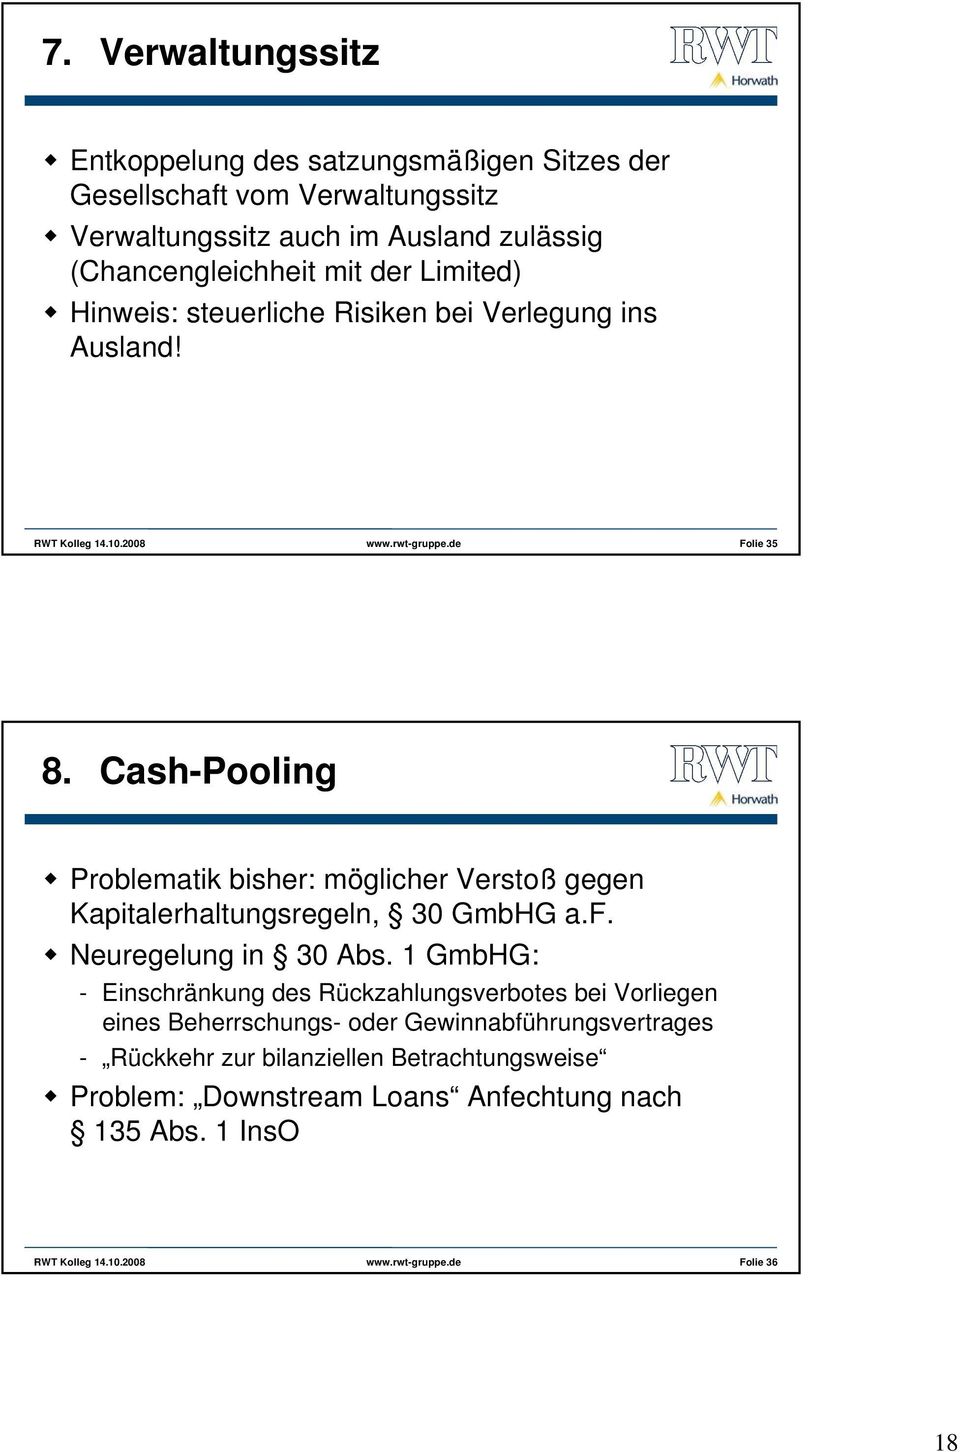 Cash-Pooling Problematik bisher: möglicher Verstoß gegen Kapitalerhaltungsregeln, 30 GmbHG a.f. Neuregelung in 30 Abs.